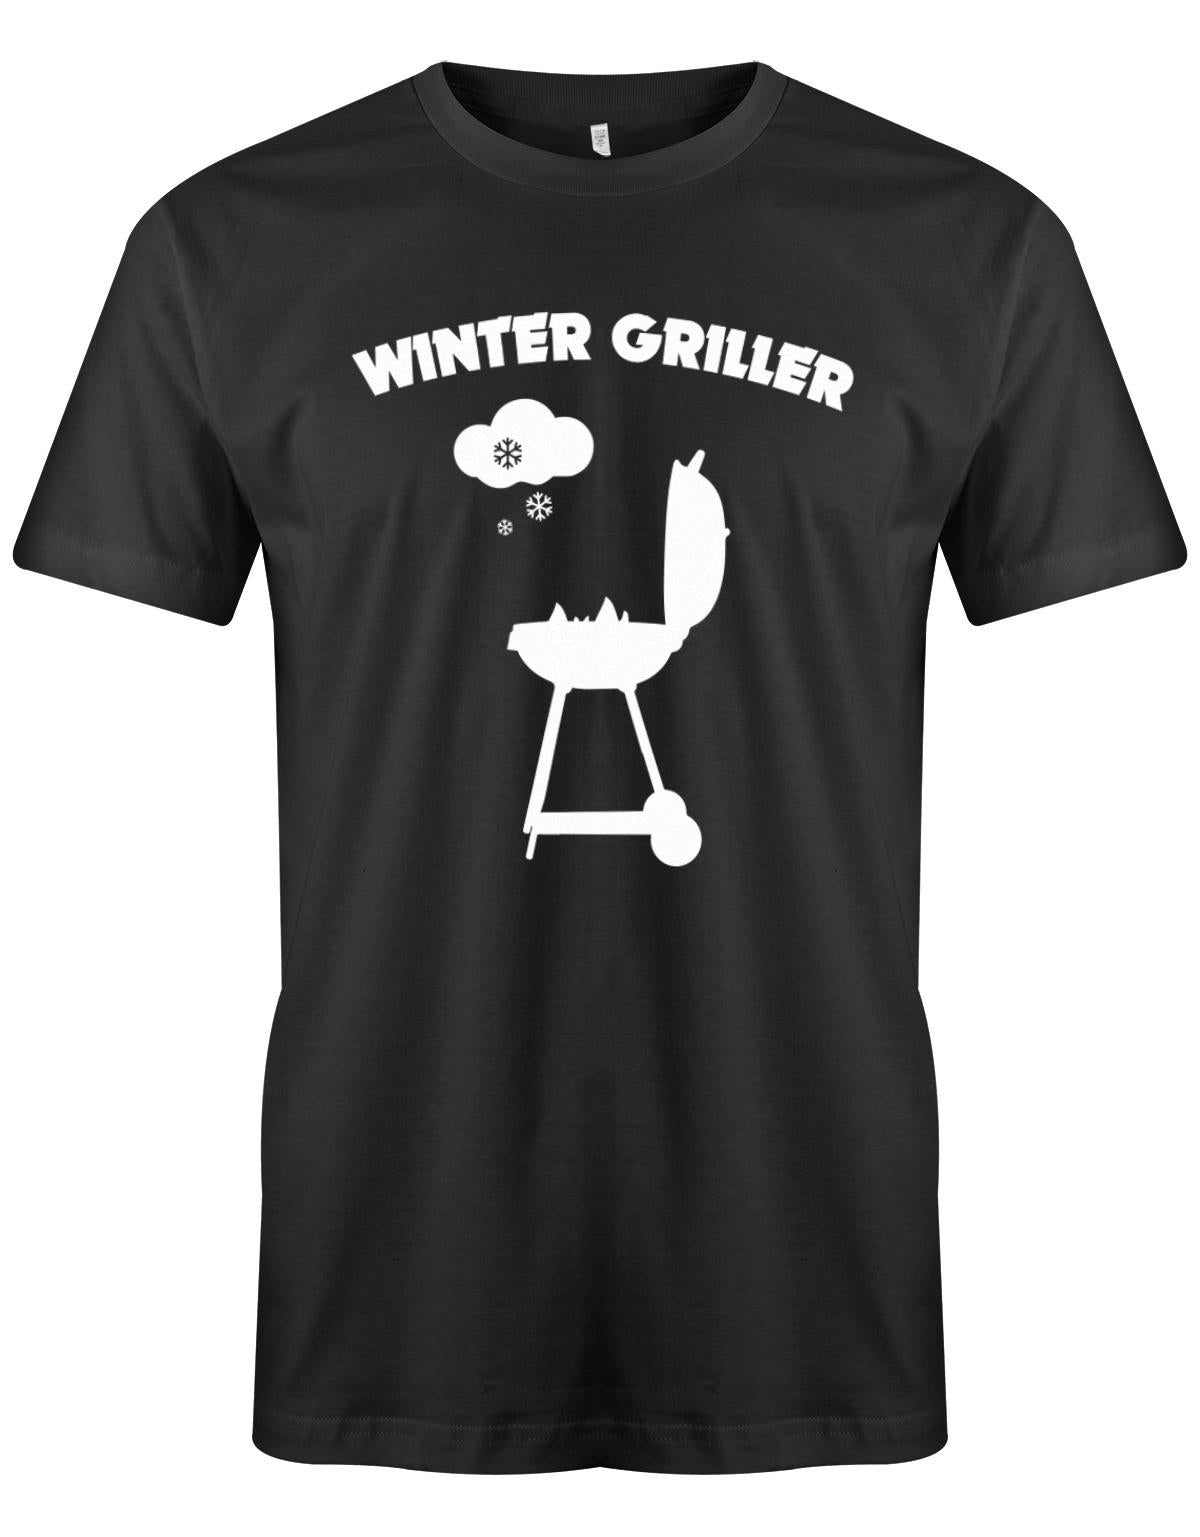 Winter-Griller-Schnee-Herren-Grill-Shirt-SChwarz